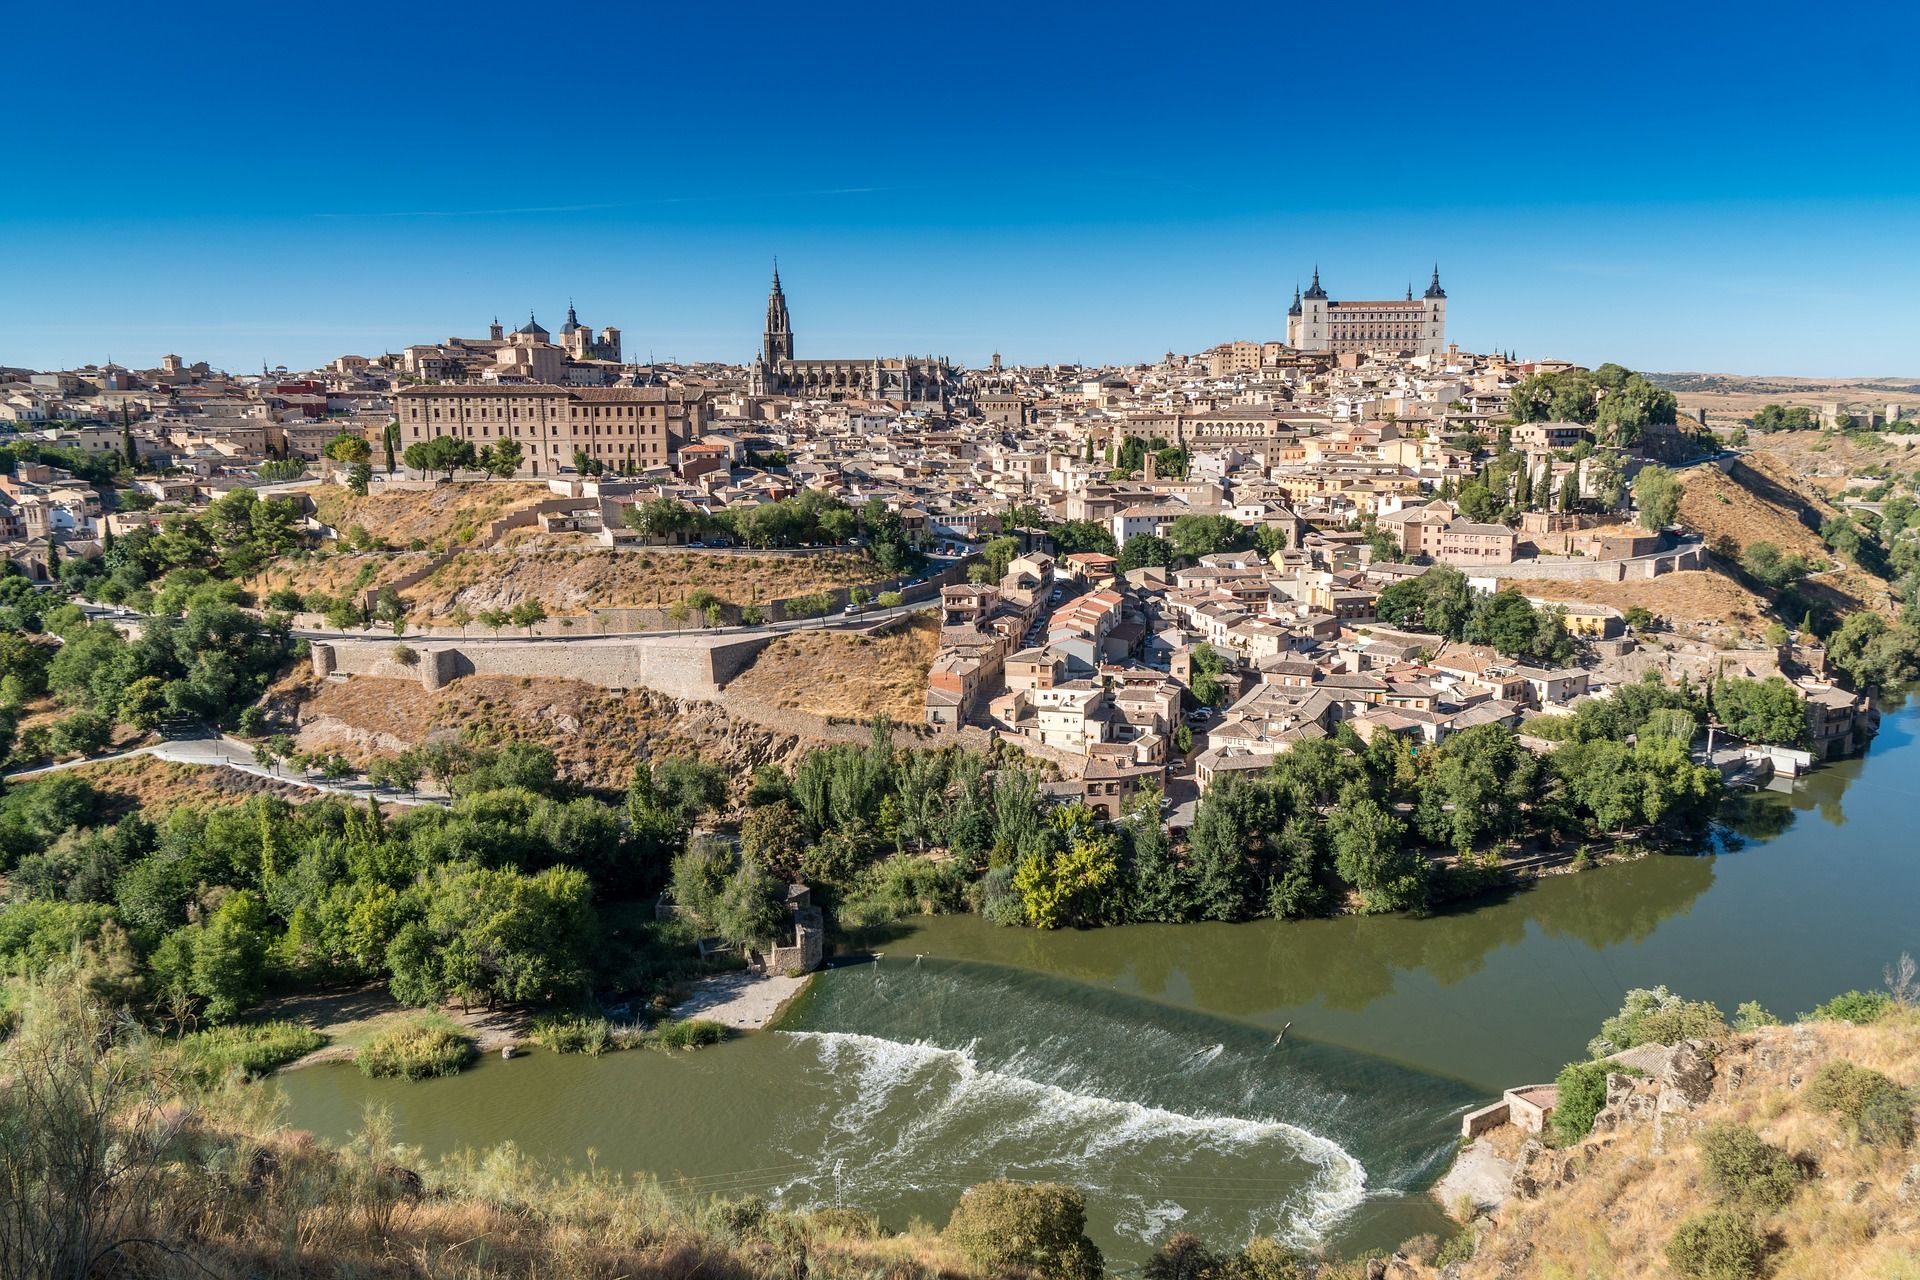 Mirador del valle Toledo